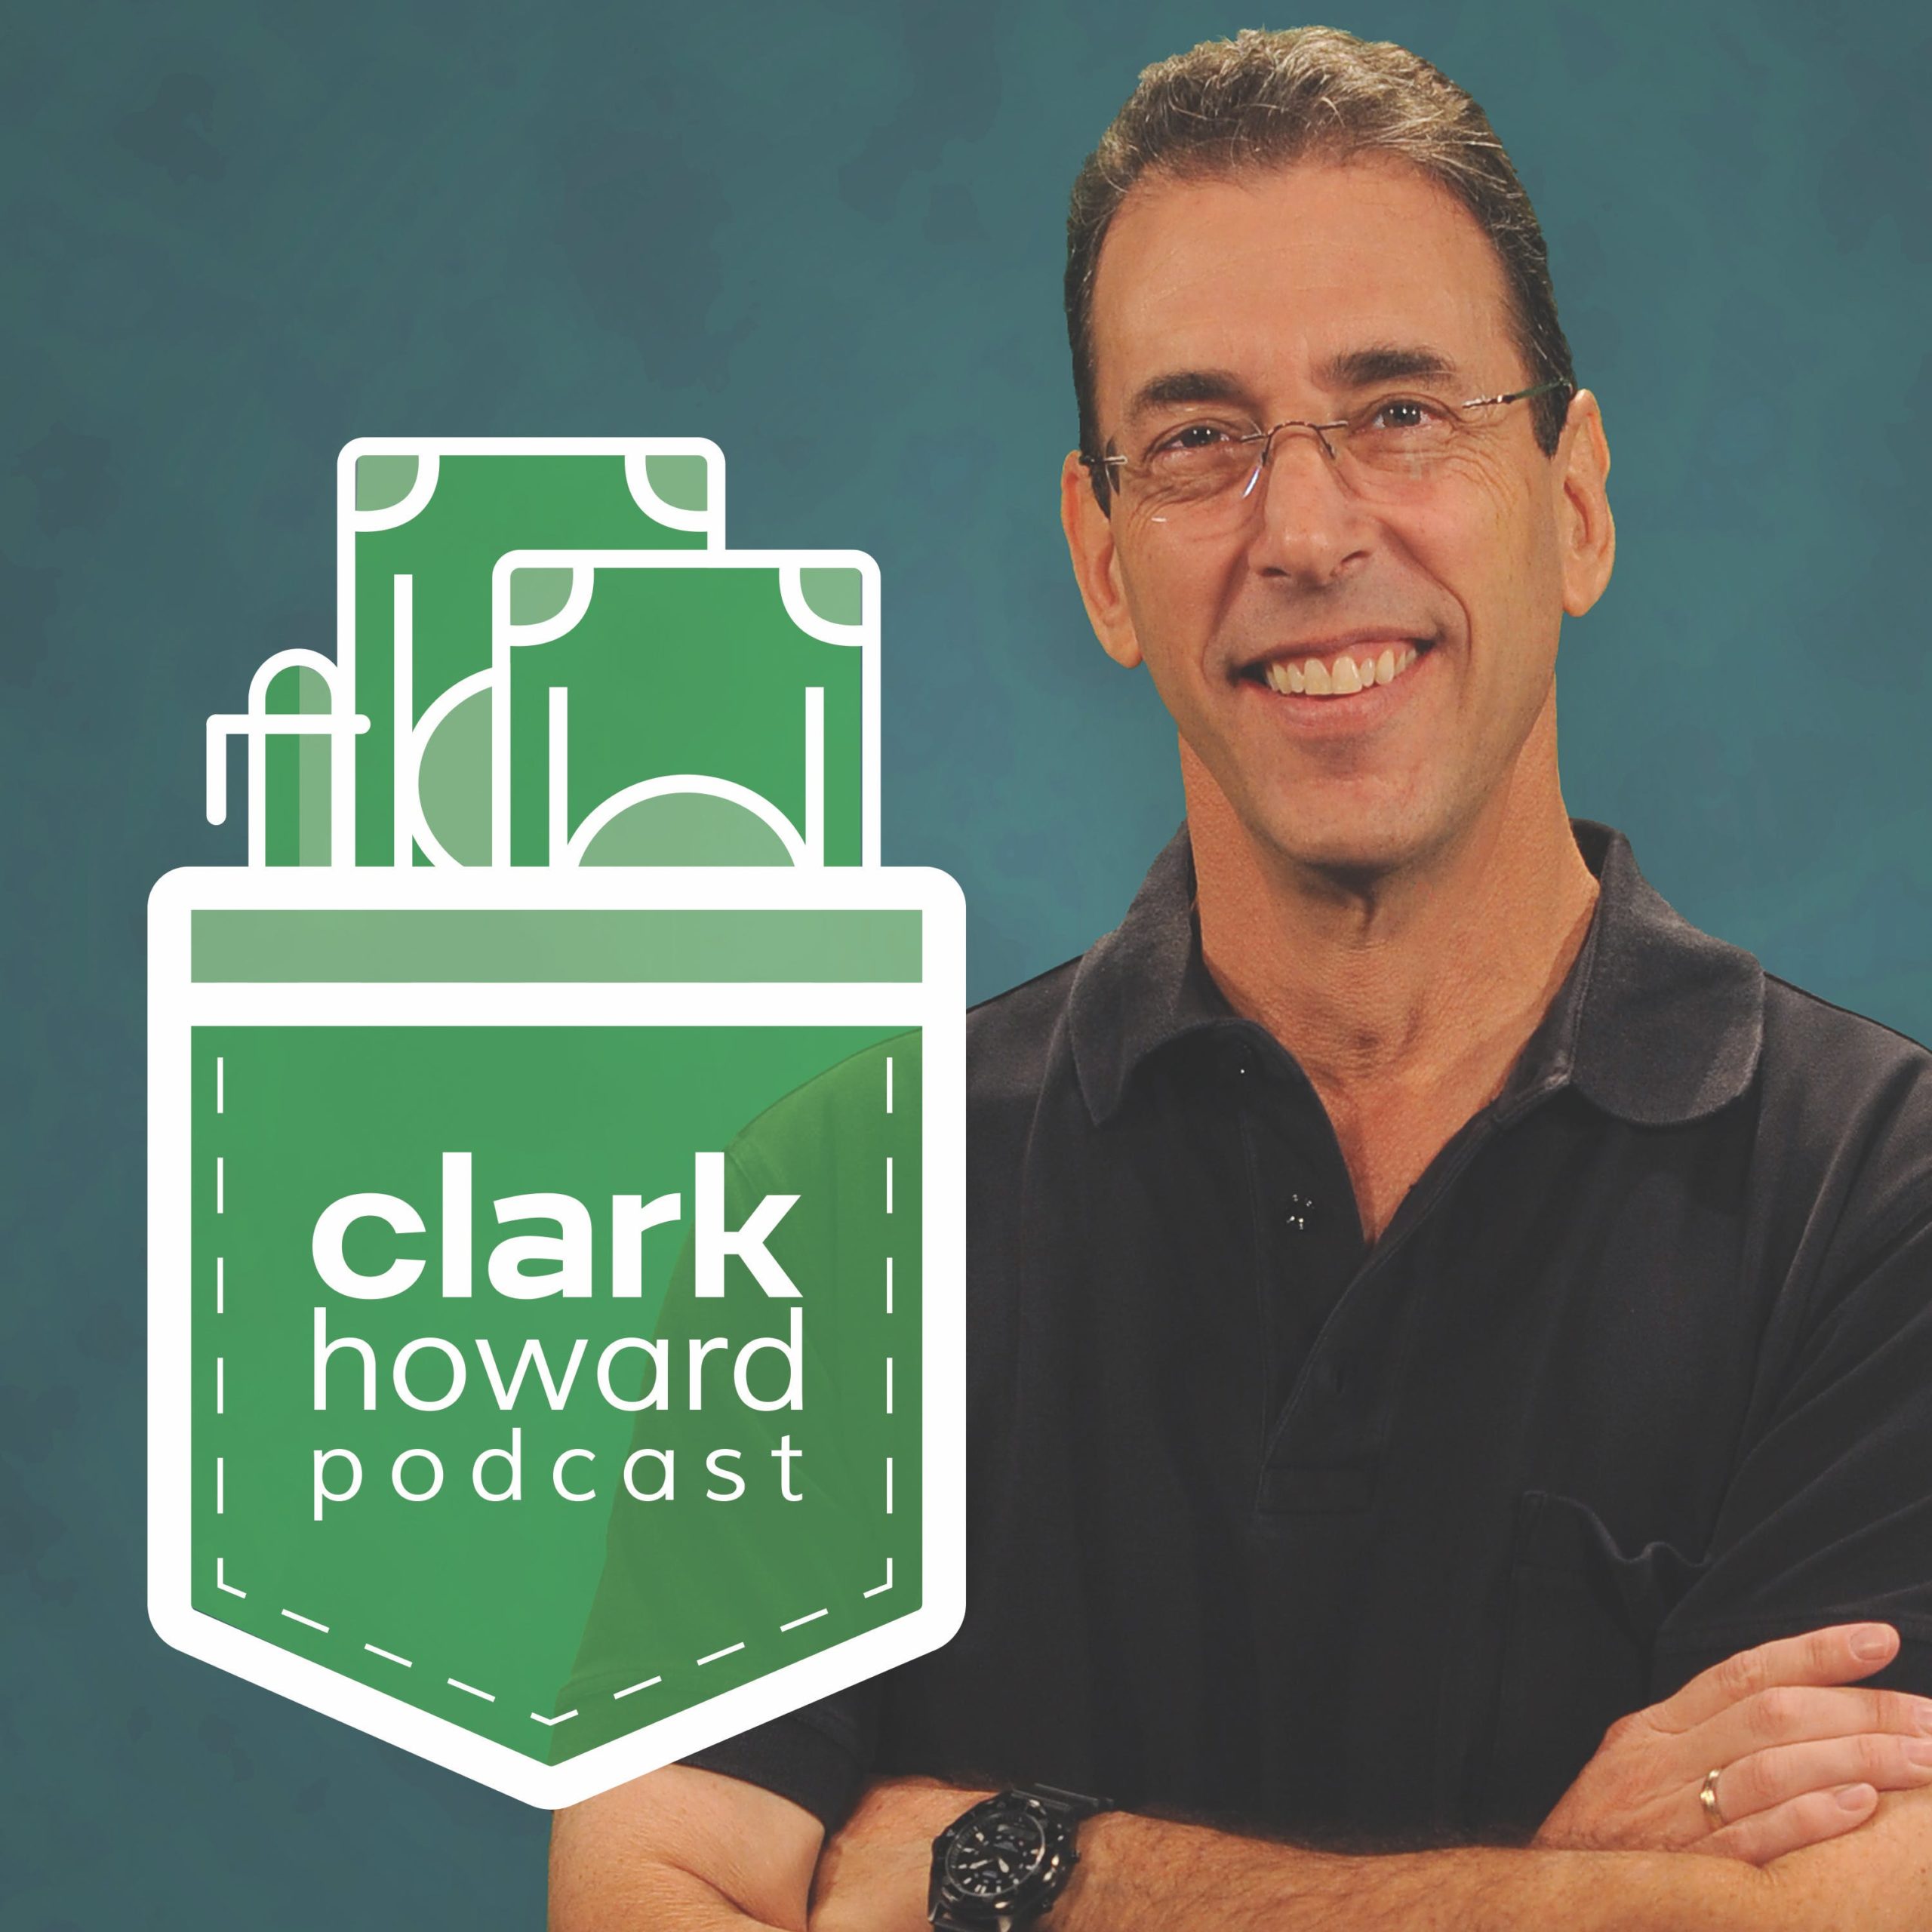 Newsletter - Clark Deals